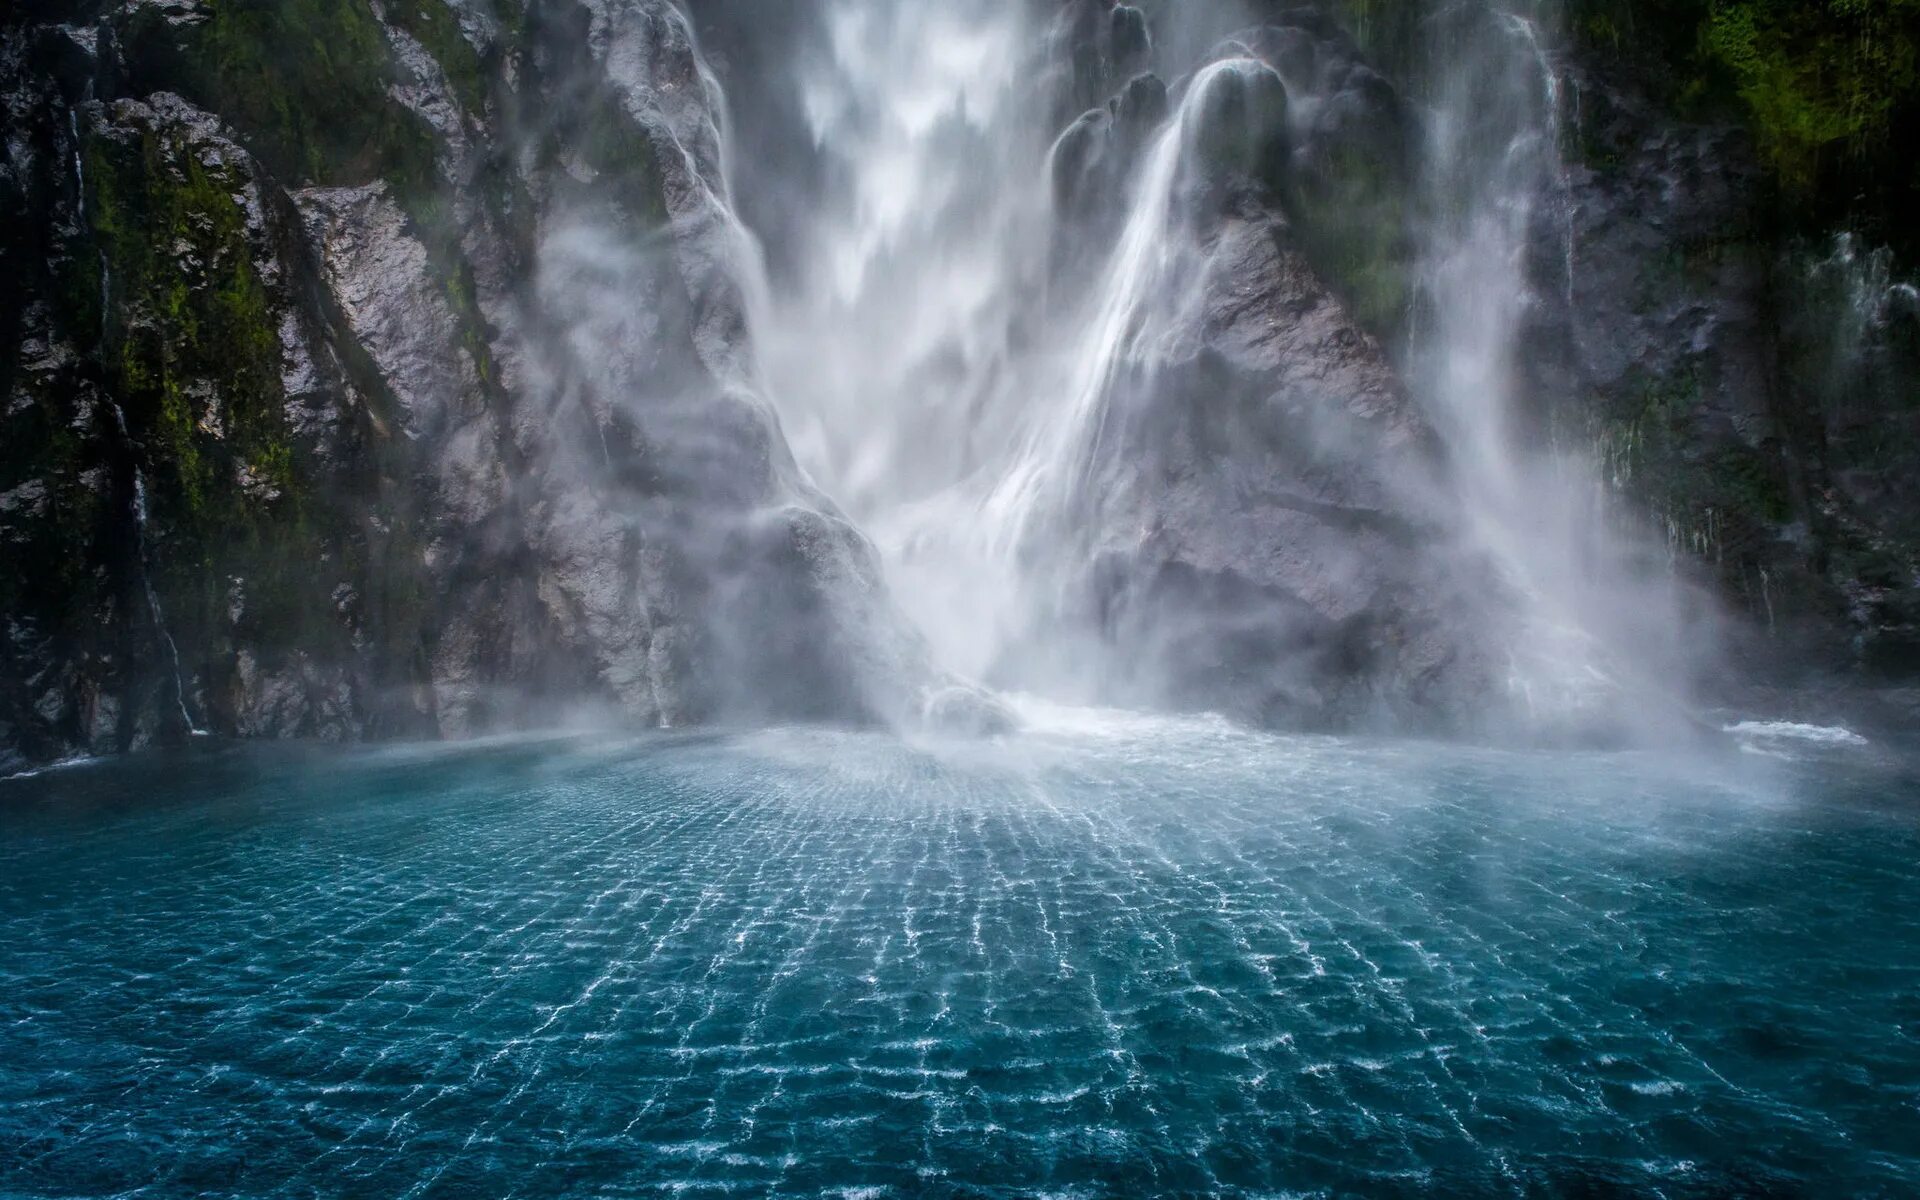 Милфорд саунд водопады. Водопад « голубая Лагуна» ( г.холм). Хенргайд водопад. Гидиб водопад.